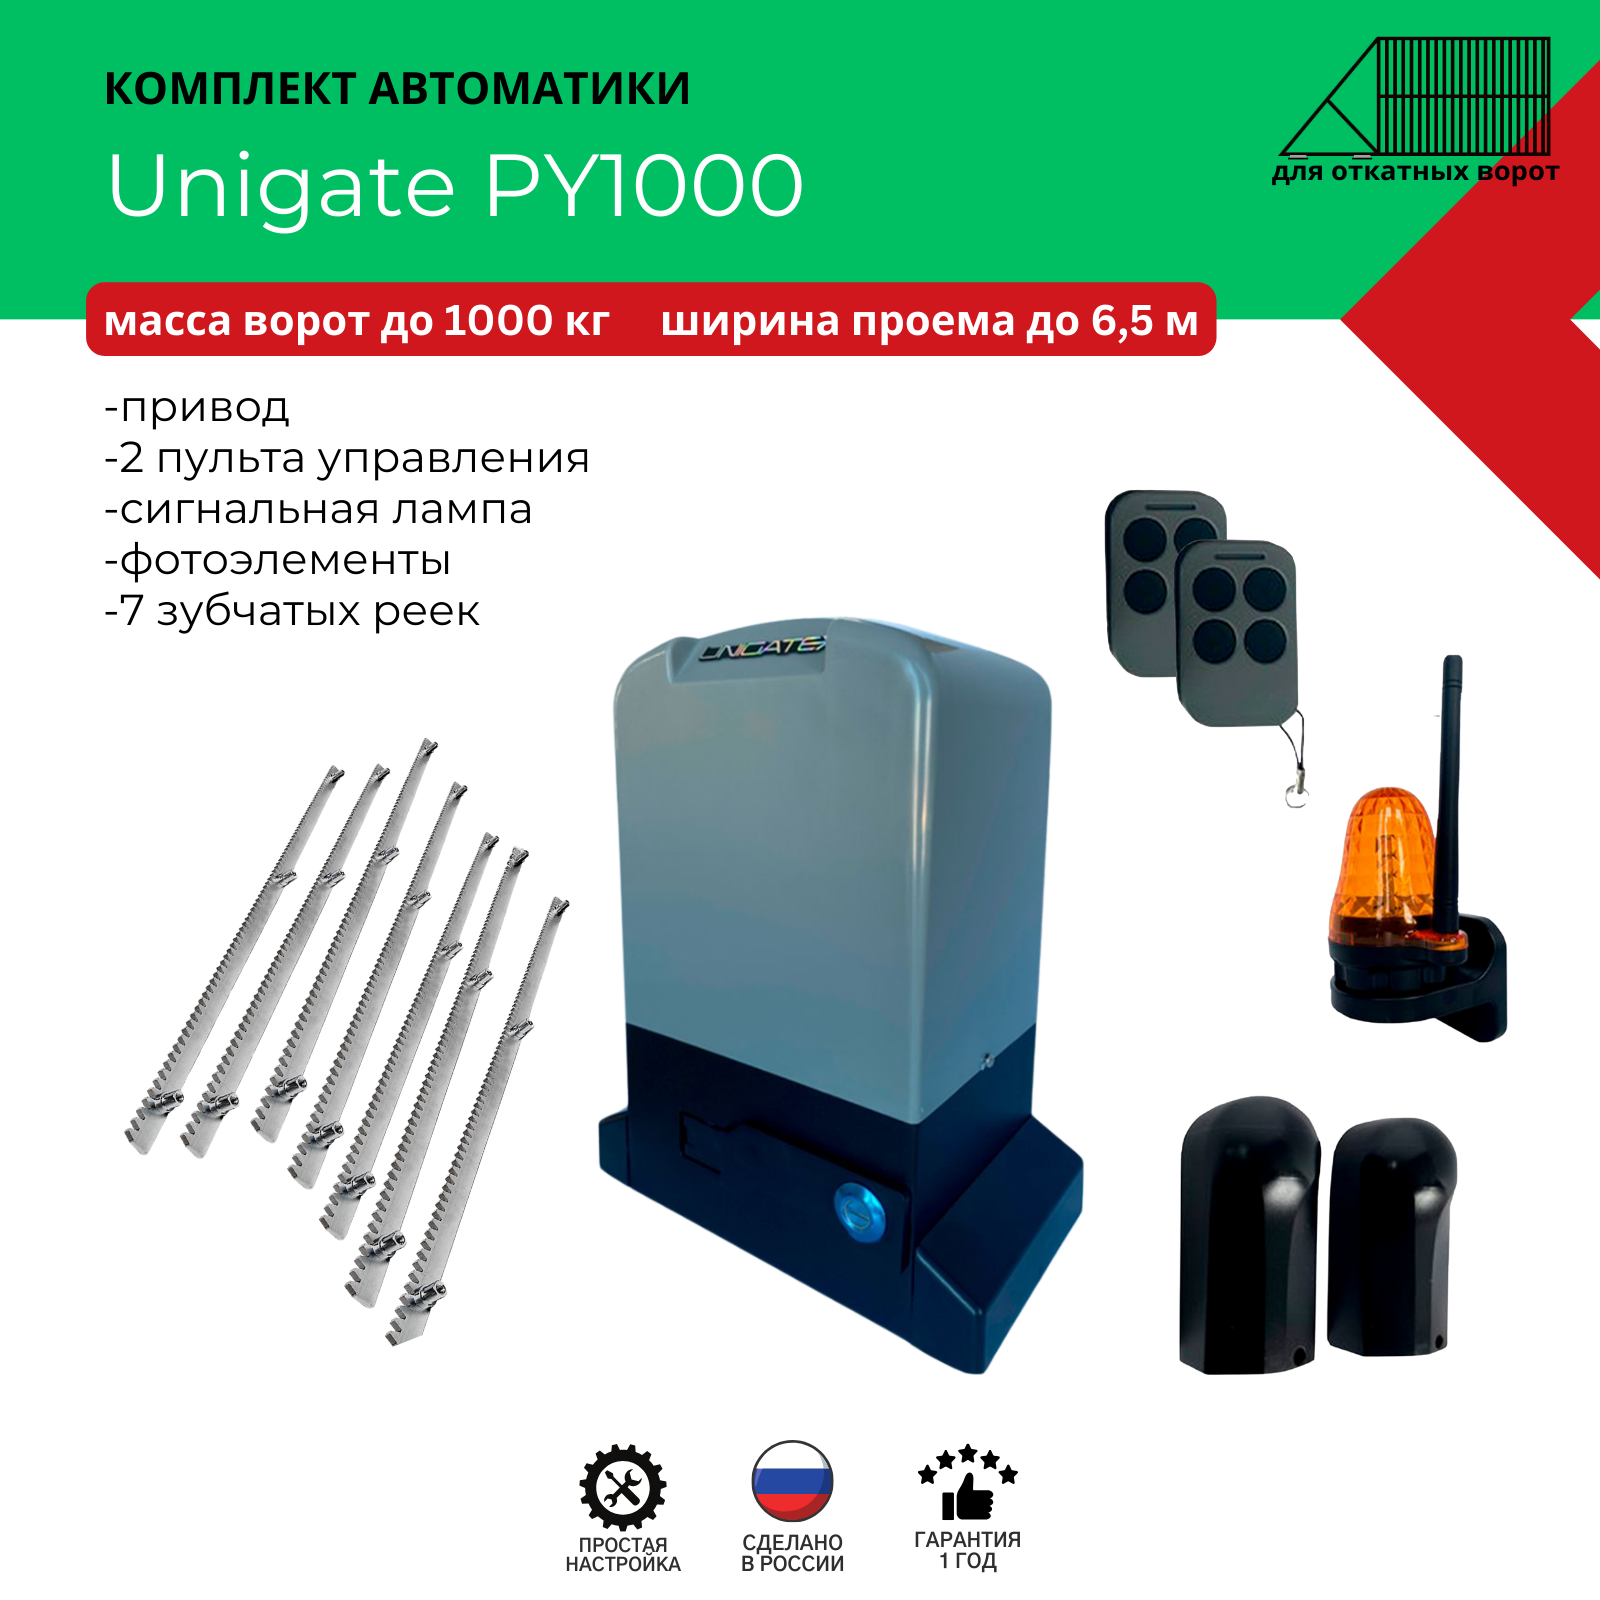 Автоматика для откатных ворот Unigate PY1000 массой до 1000кг, ширина проема 6,5м (привод, 2 пульта, фотоэлементы, сигнальная лампа, 7 зубчатых реек)